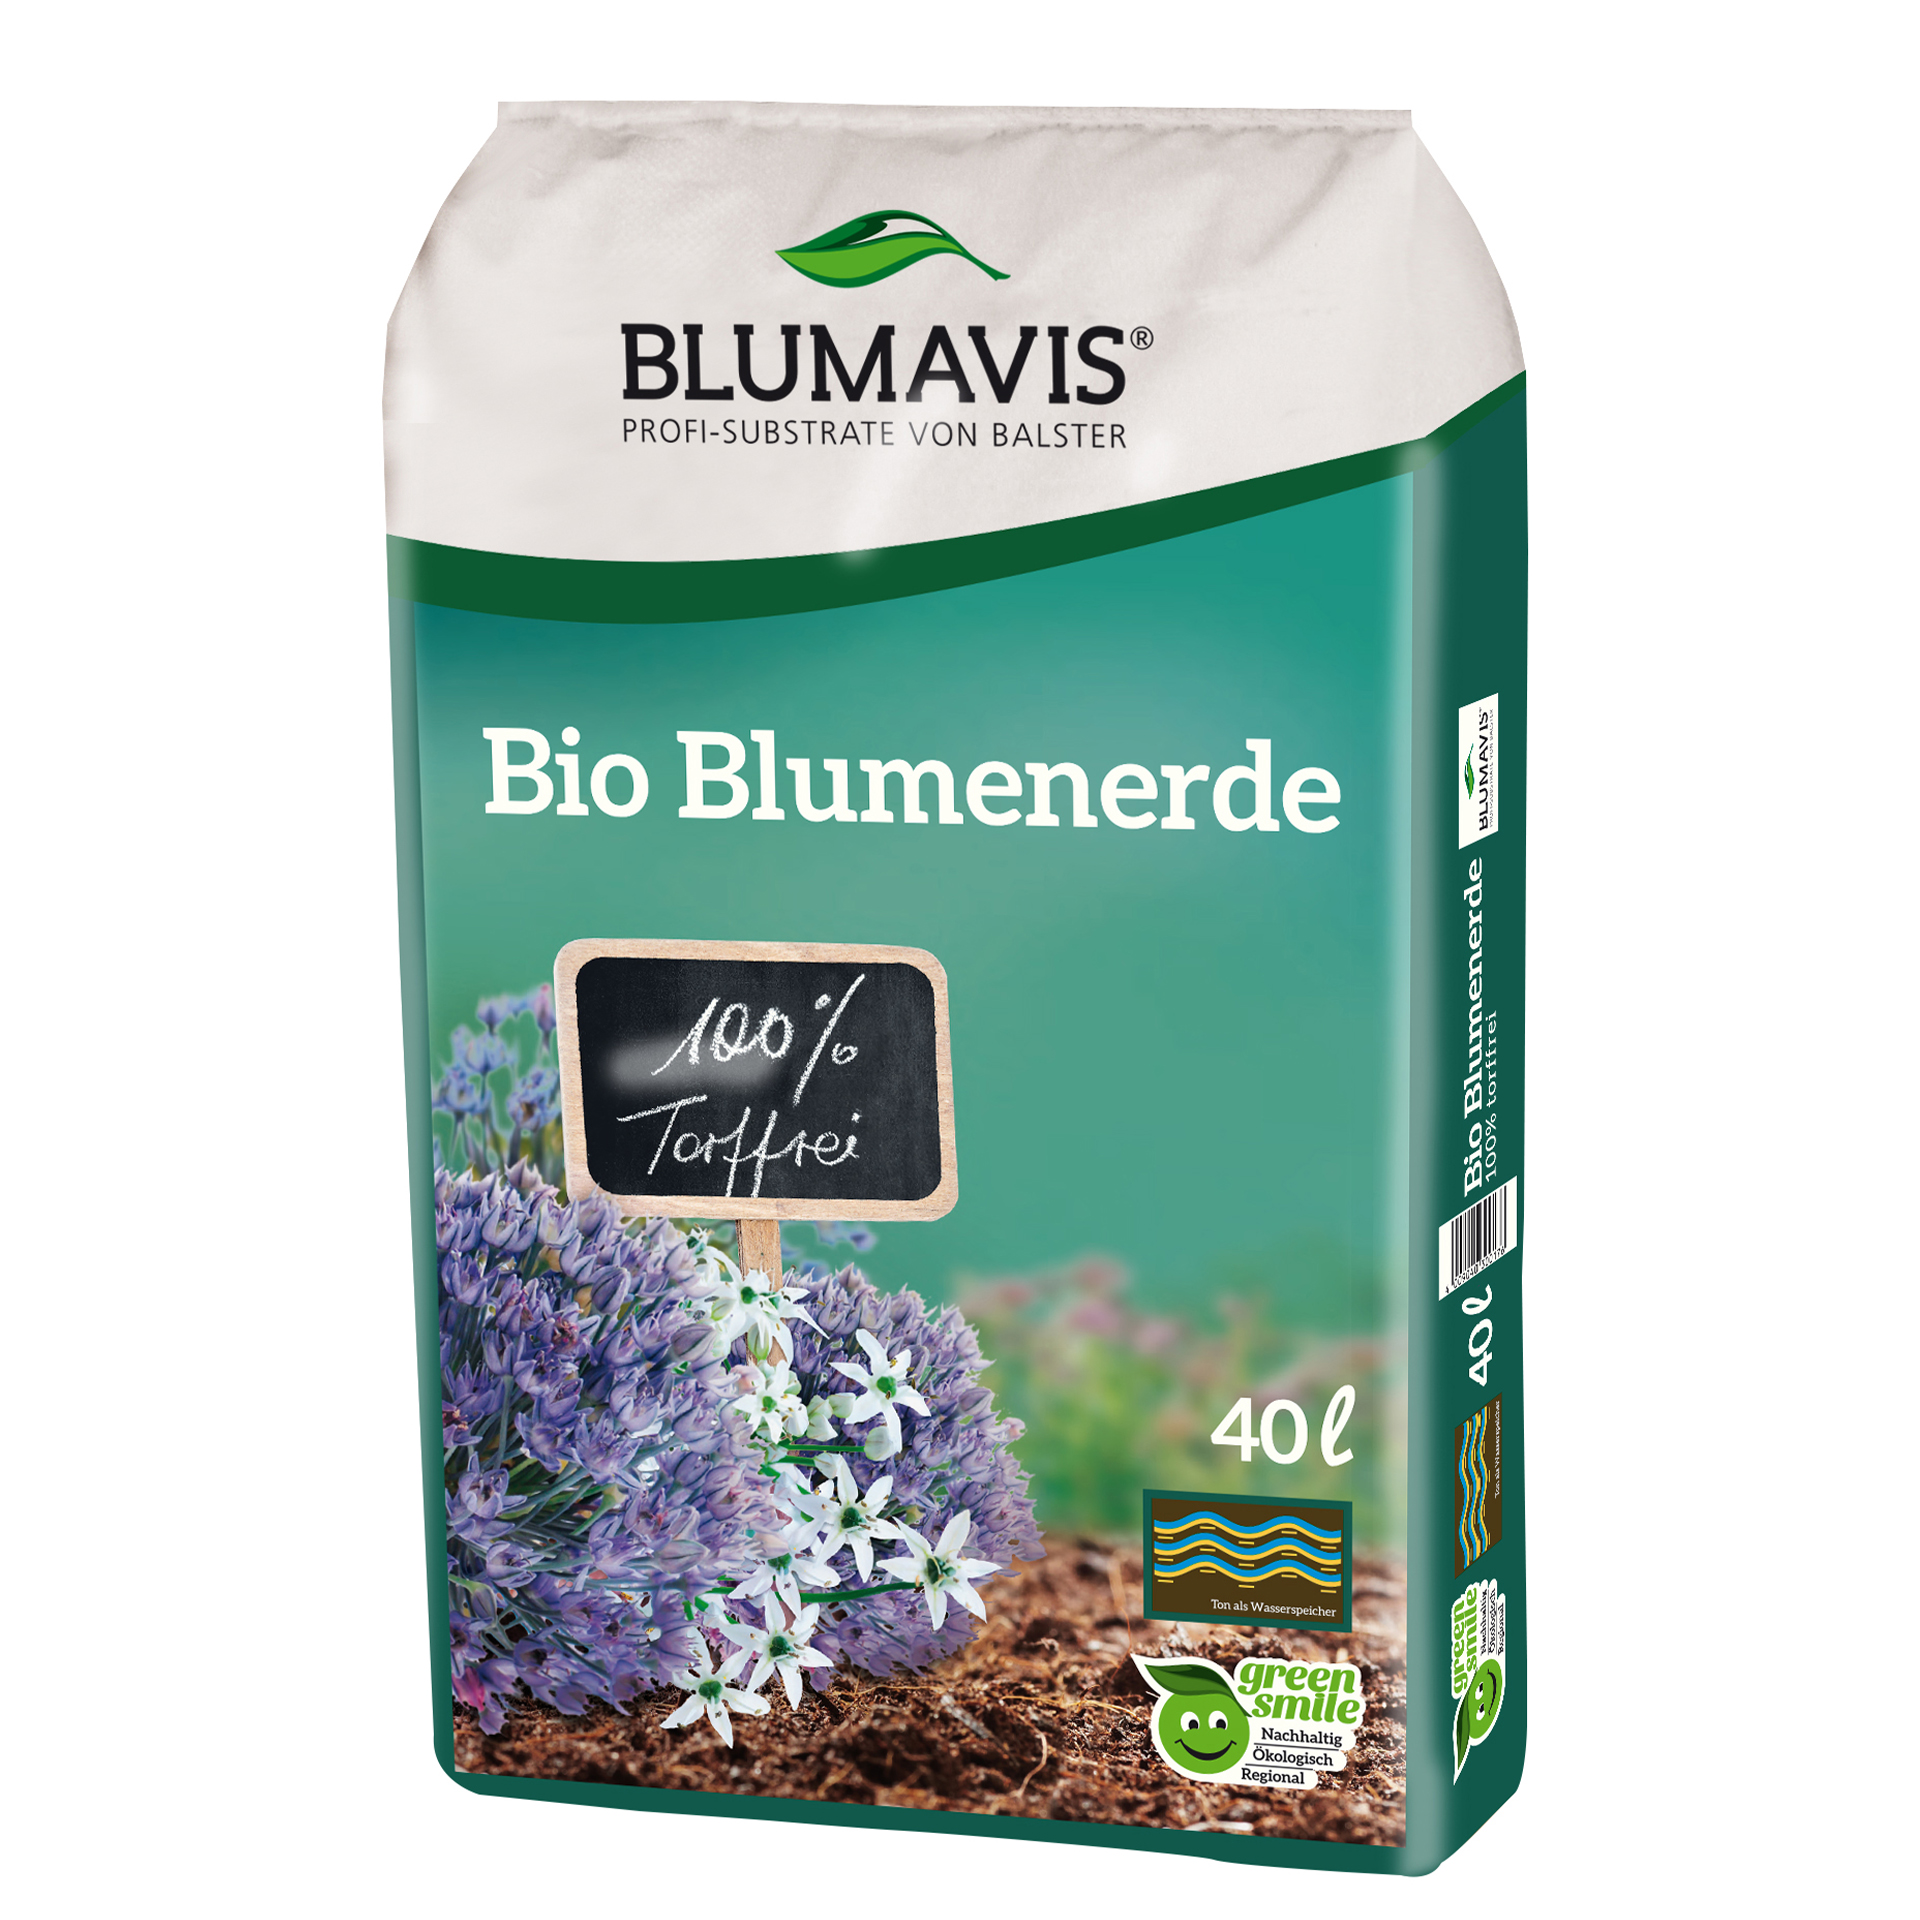 Bio Blumenerde torffrei Blumavis